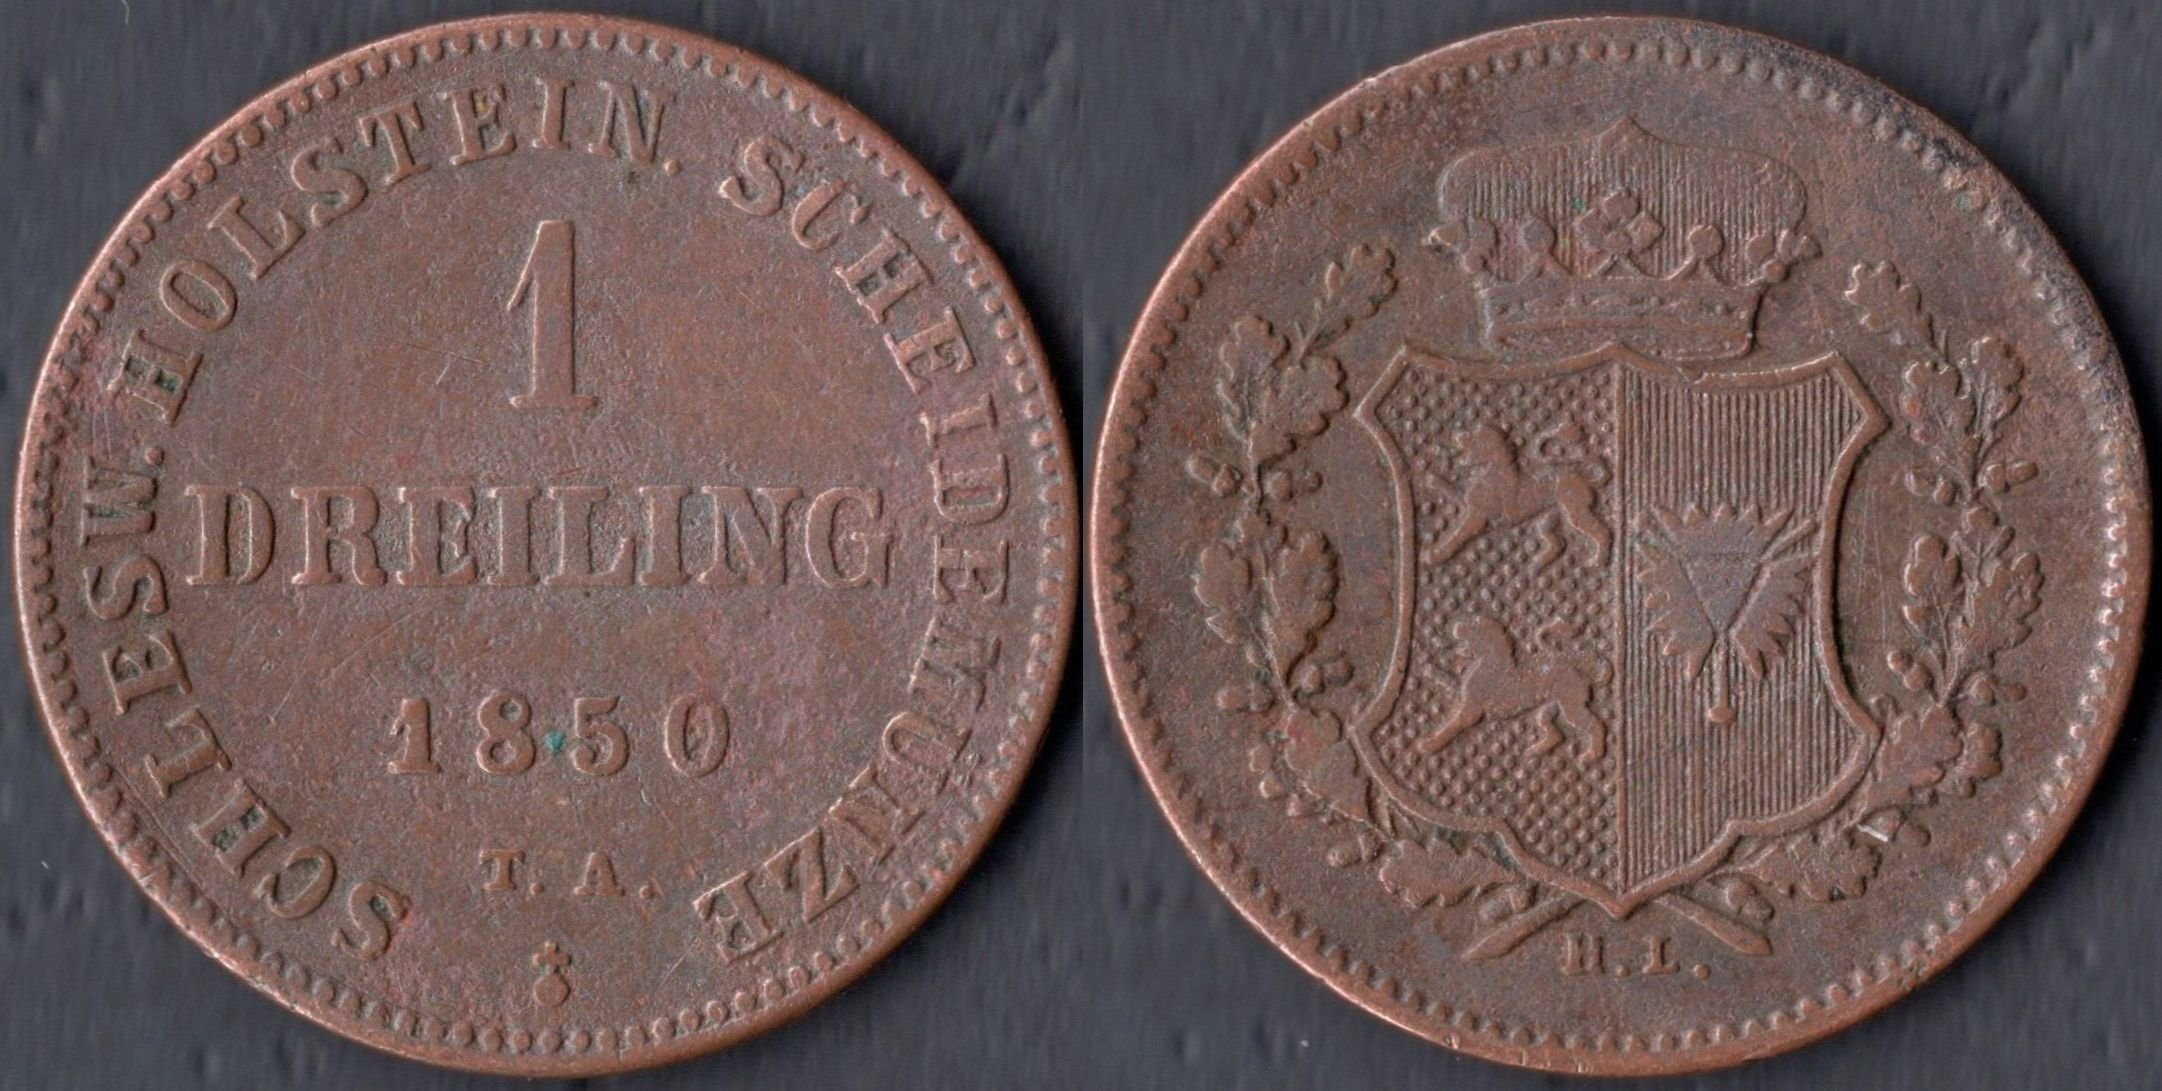 Австрийская мелкая монета. Монеты германских государств до 1871. Монета германского государства 962 Ода. Монеты германских государств до введения марки.